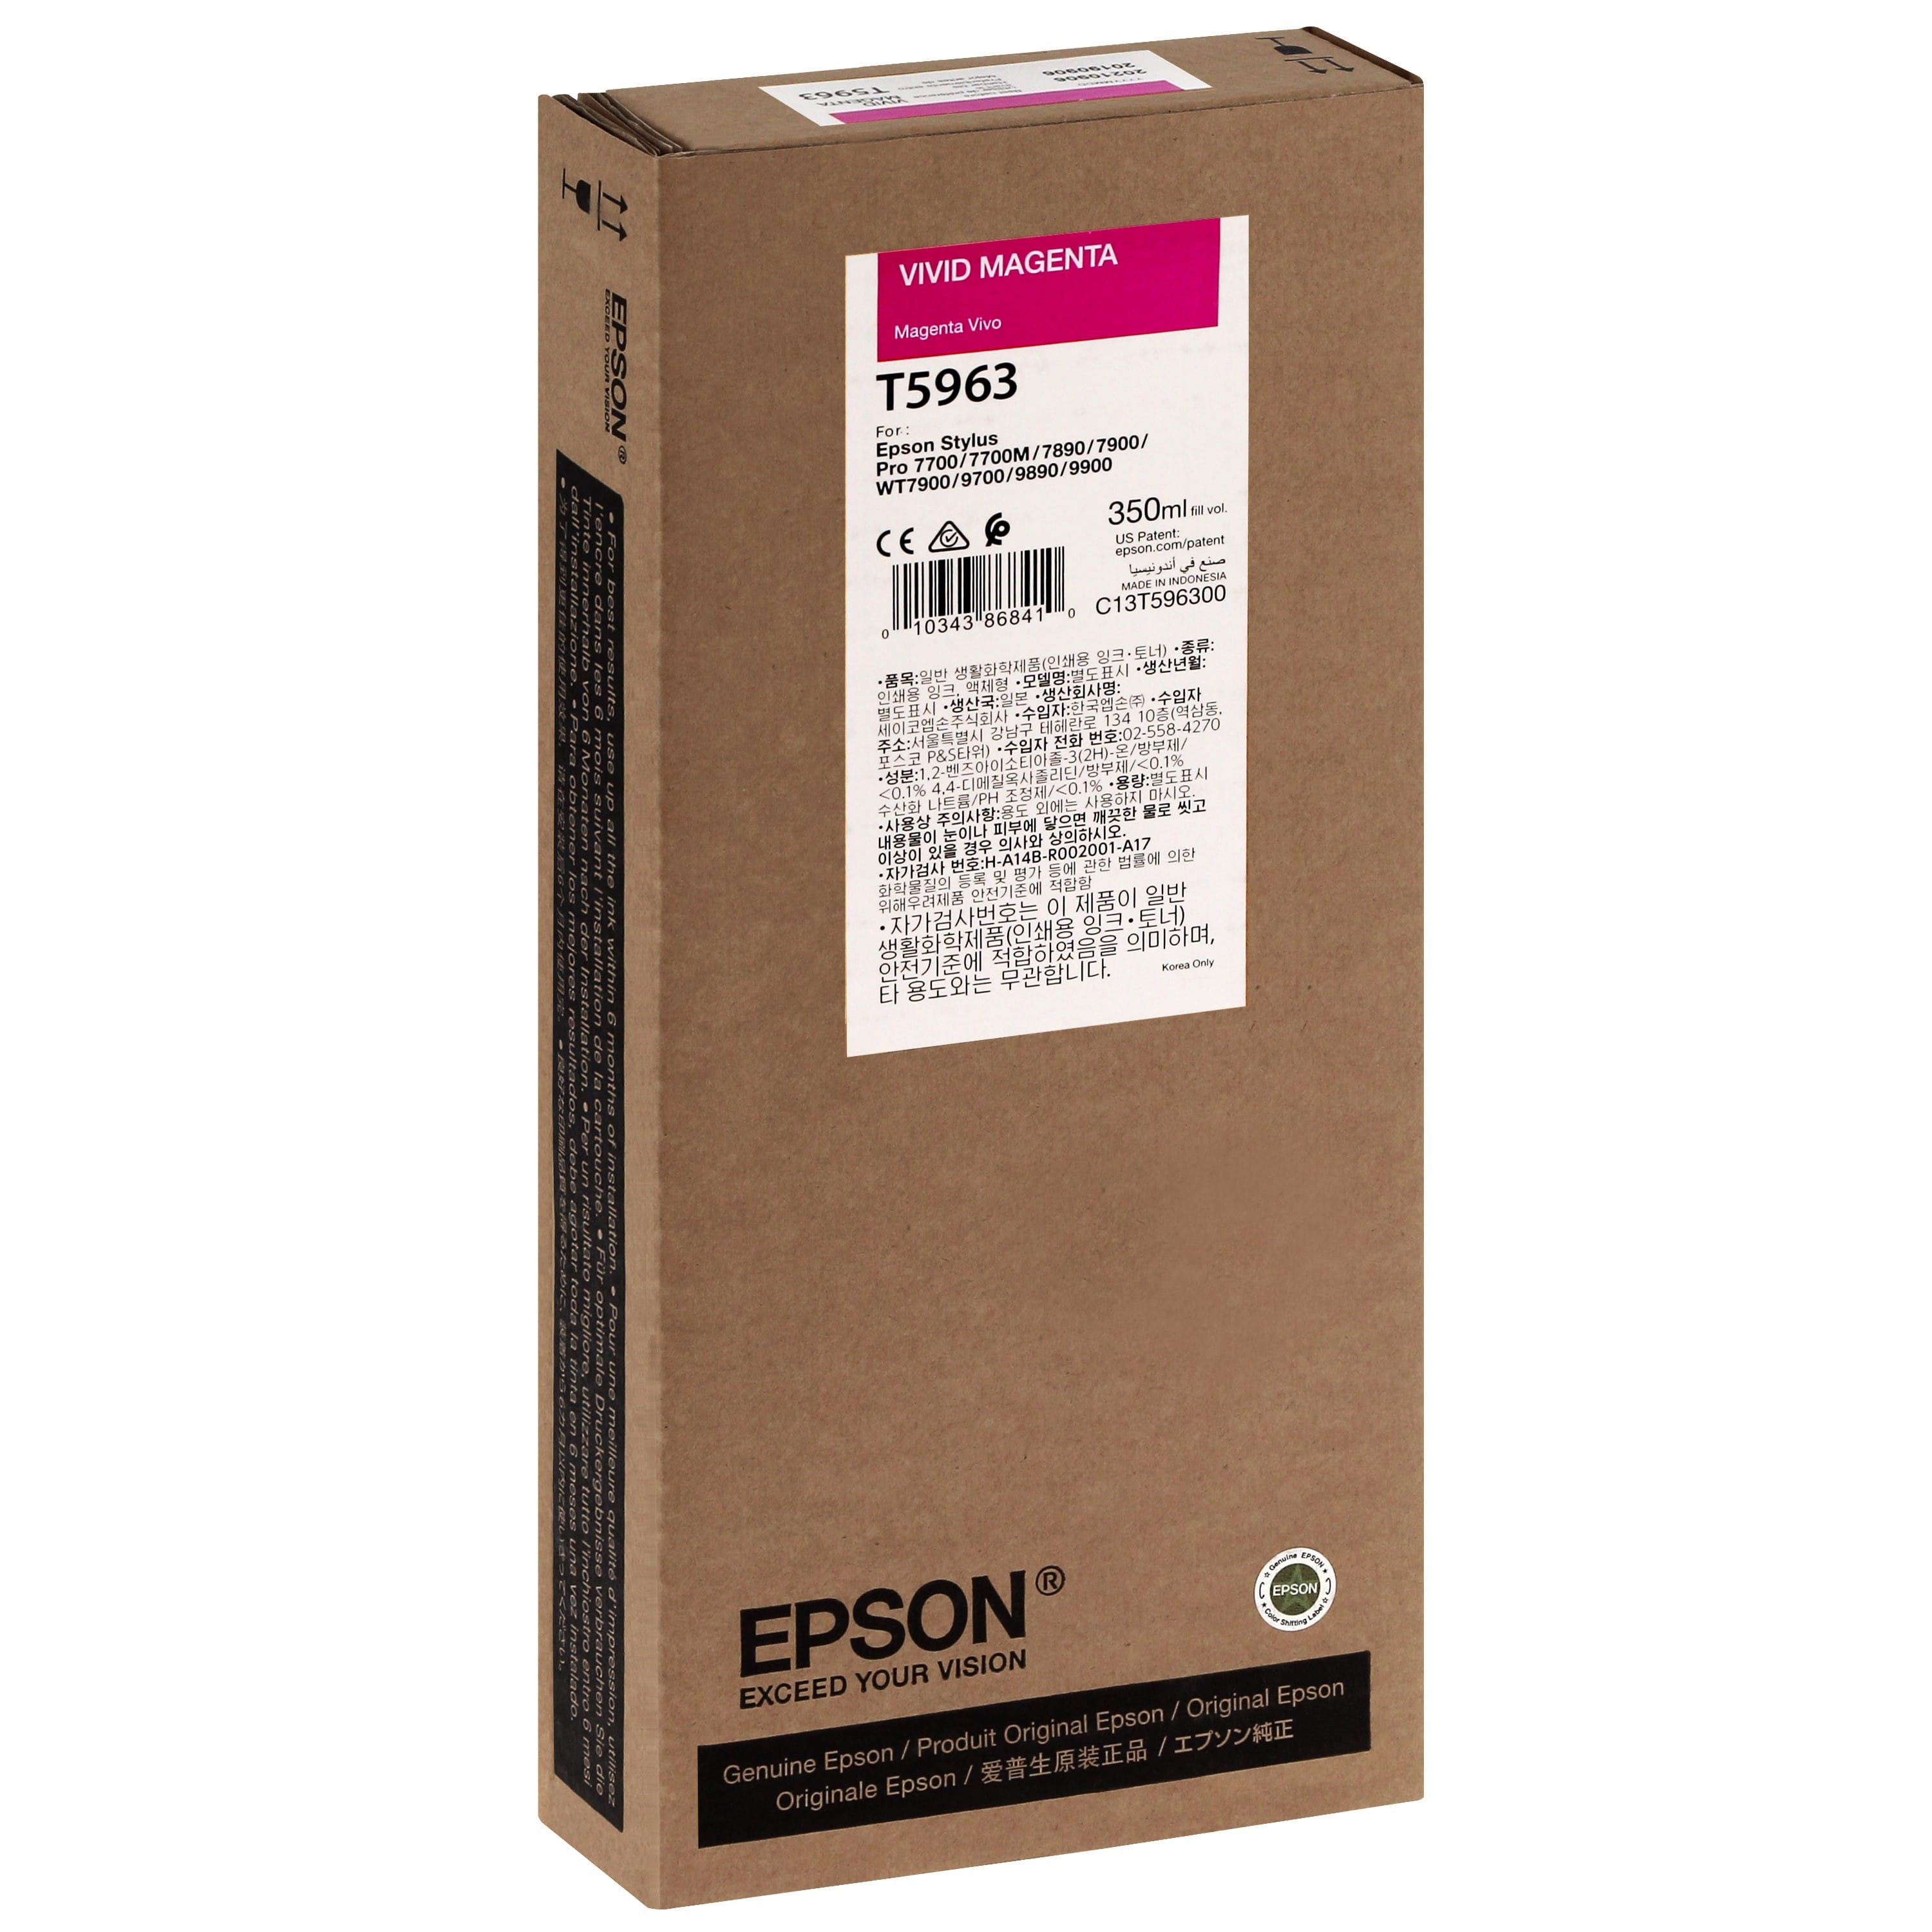 EPSON - Cartouche d'encre traceur T5963 Pour imprimante 7700/9700/7890/9890/7900/9900 Vivid Magenta - 350ml